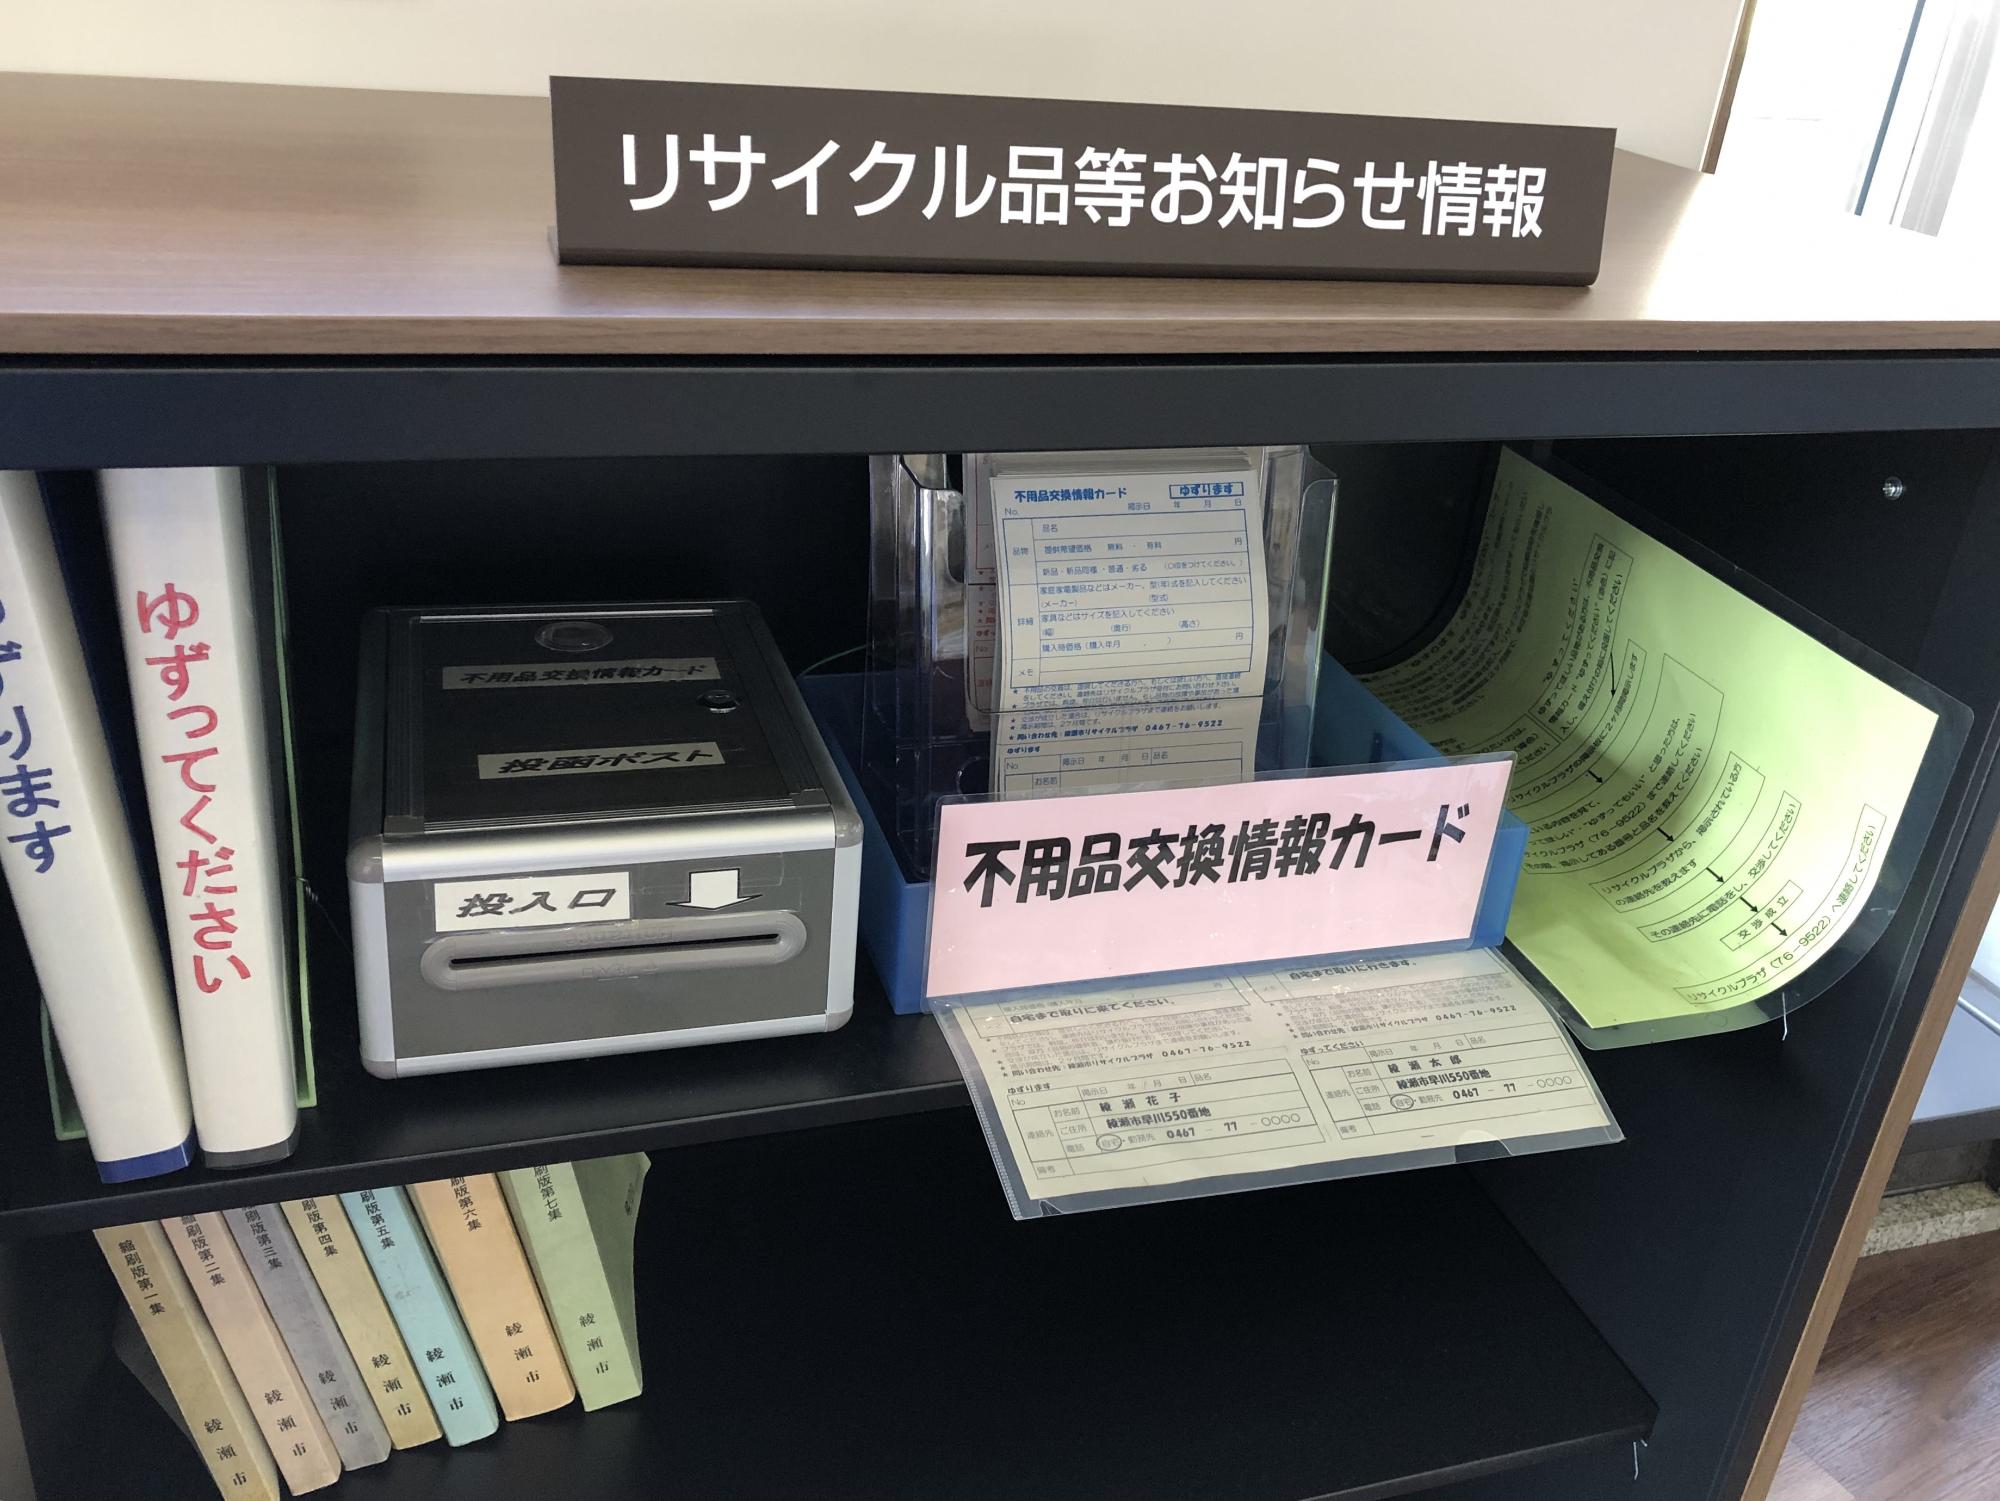 リサイクル品等お知らせ情報と書かれた机上札が置かれ、机の棚に不用品交換情報カードや投函ポストが置いてある写真